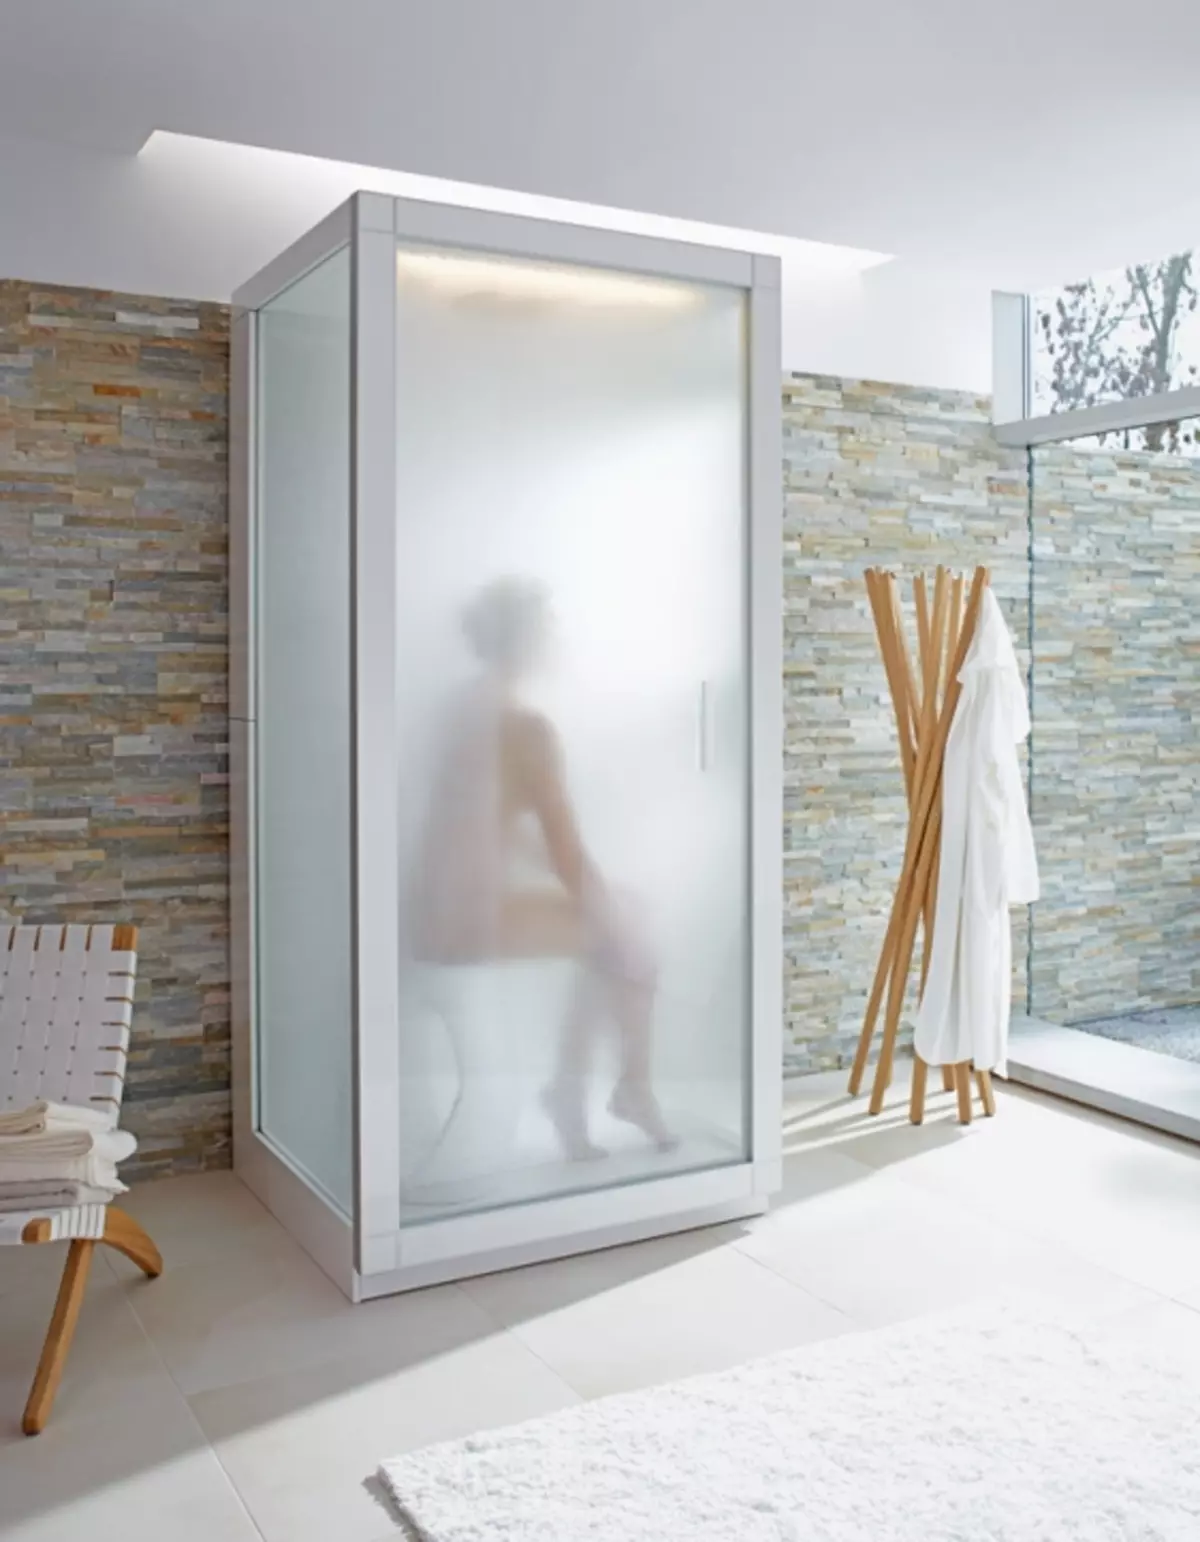 תא מקלחת עם גנרטור קיטור: מודלים עם אמבט אדים טורקית וחדר אמבטיה, עם חמאם וסאונה פינית, אפשרויות אחרות. ביקורות 10322_5